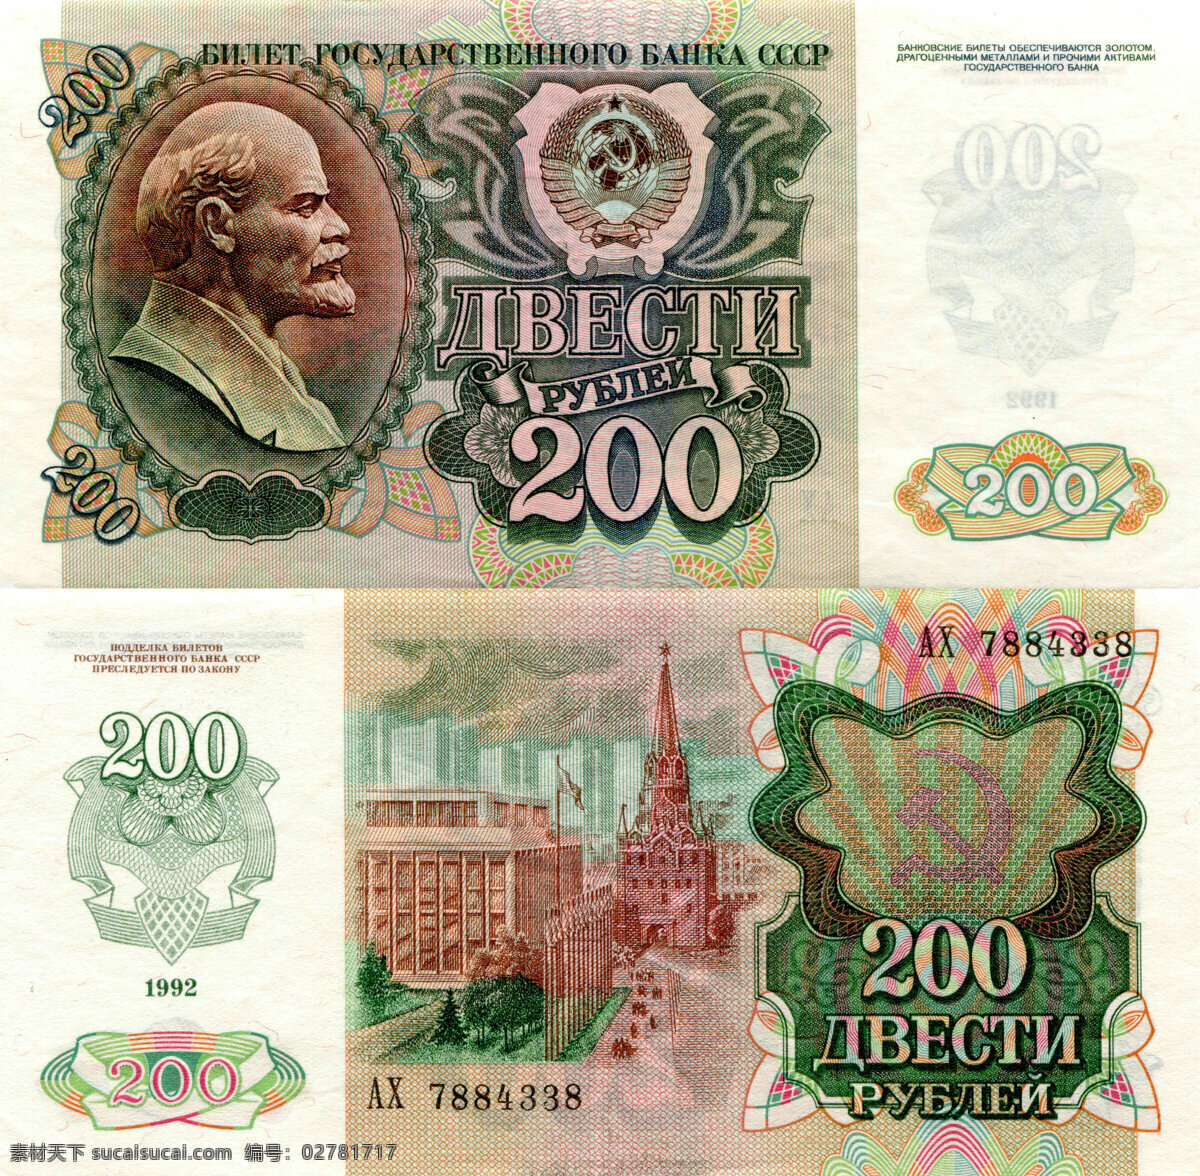 各国纸币 纸币 外币 钱币 金钱 美元 欧元 人民币 钞票 商务金融 金融货币